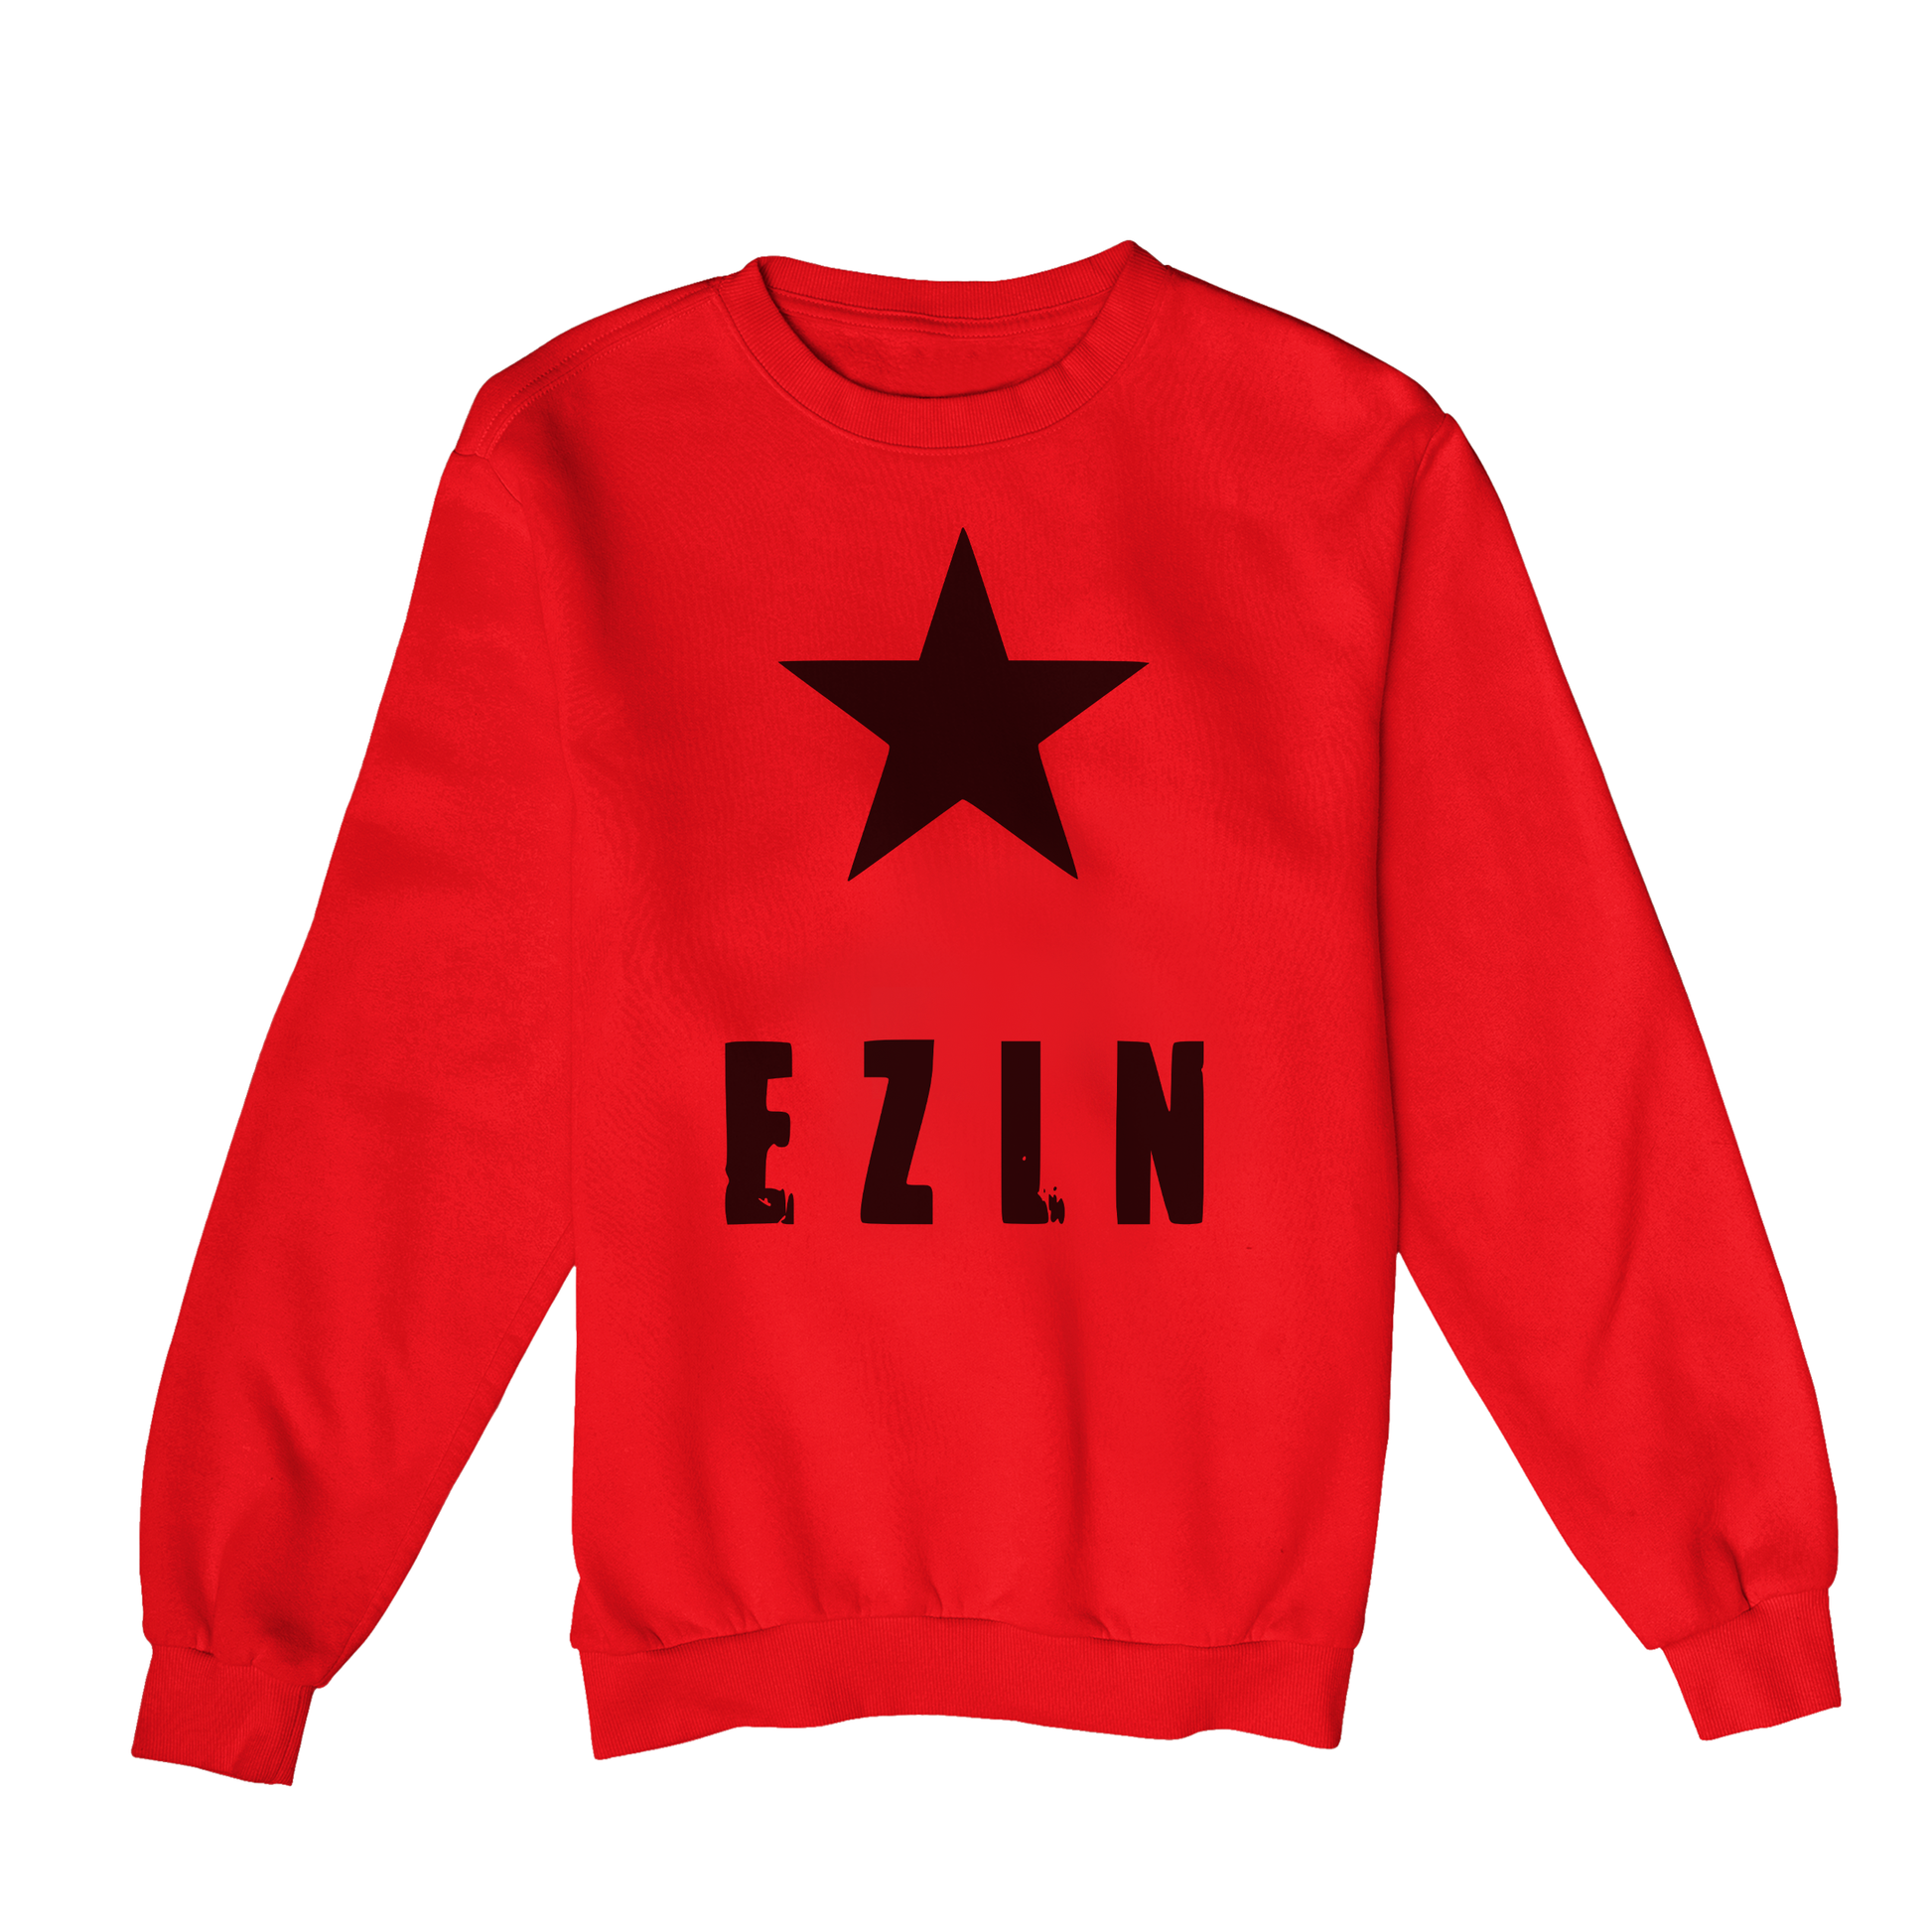 Moletom Estampa: Texto escrito EZLN(Exército Zapatista de Libertação Nacional) com uma estrela acima.